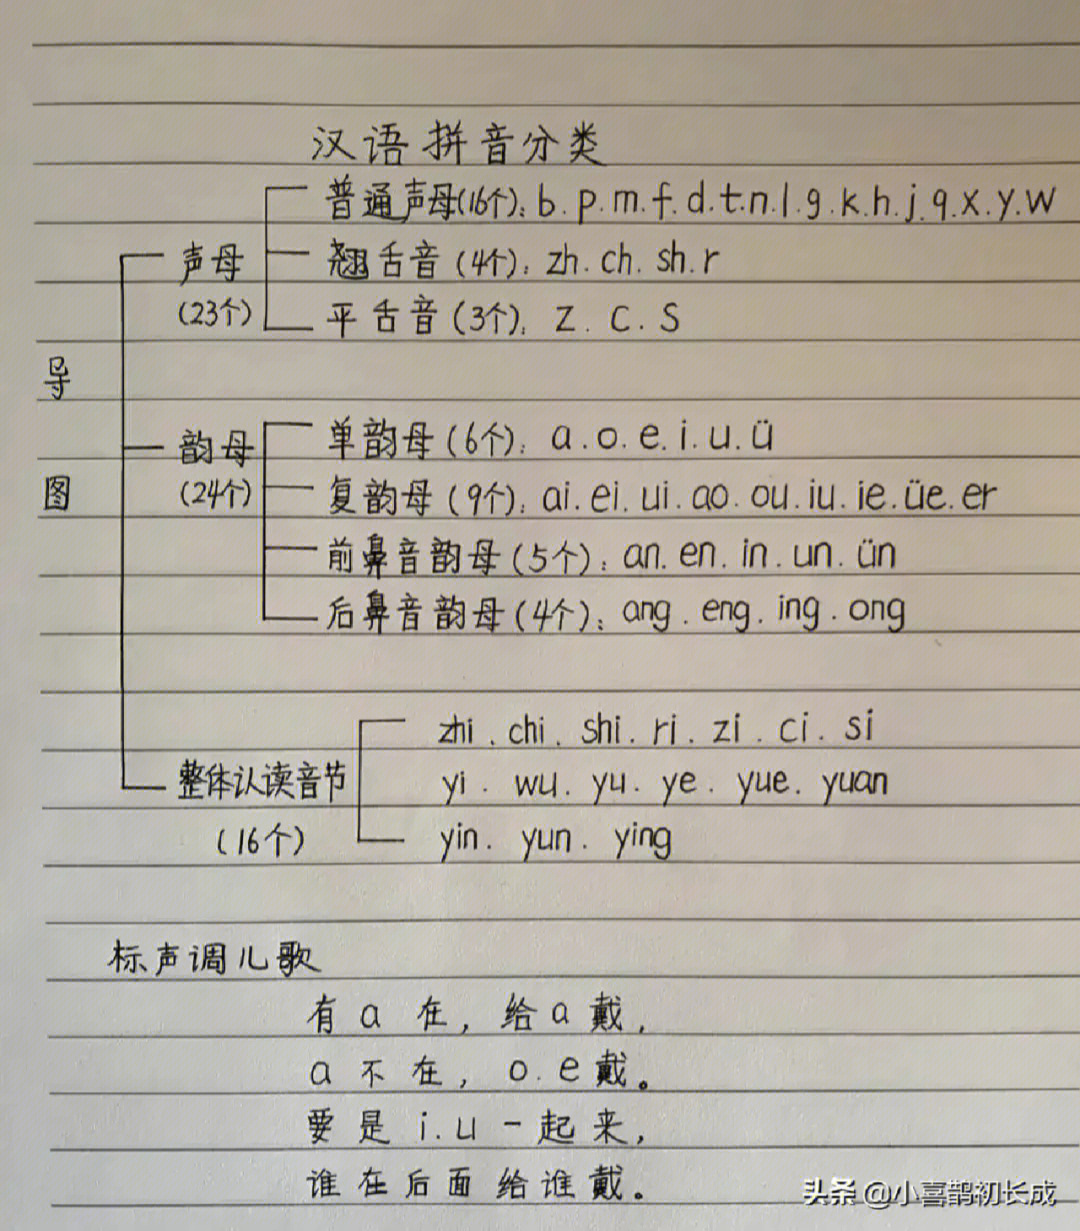 学霸妈妈太有才了,把汉语拼音变成顺口溜,孩子会读会写会区别